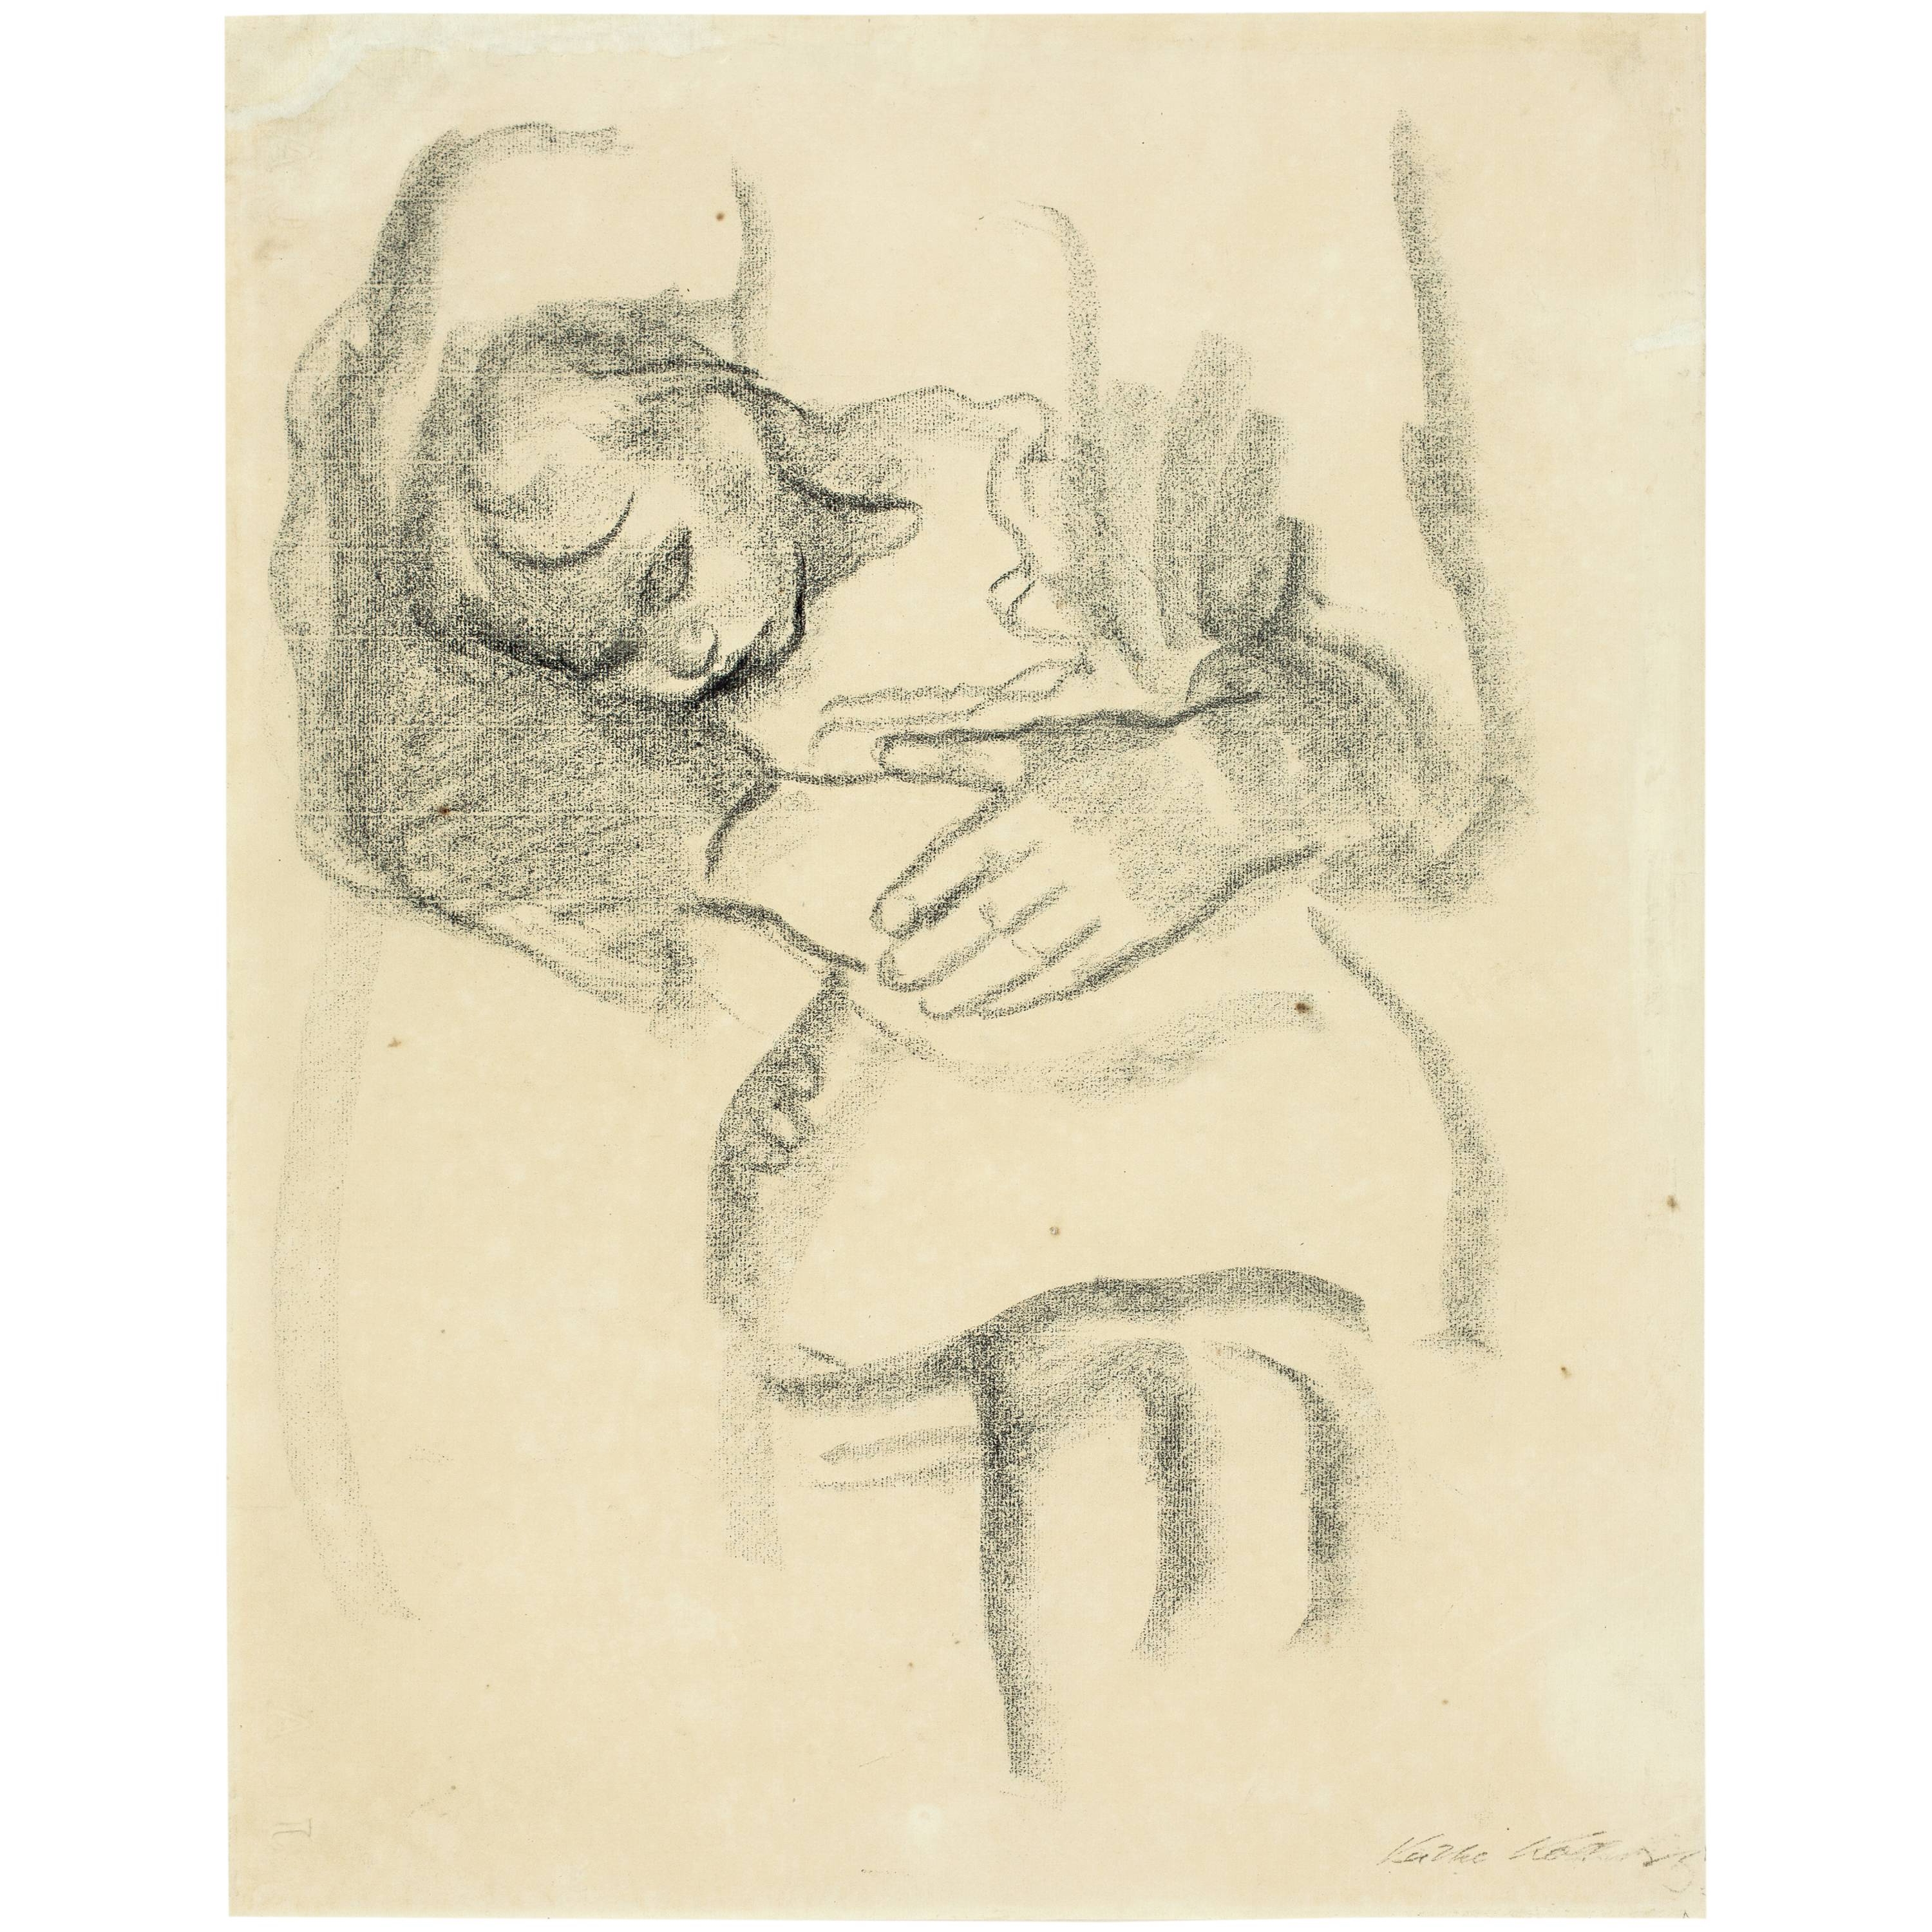 Schlafendes Kind im Schoss der Mutter by Käthe Kollwitz, 1909/1910